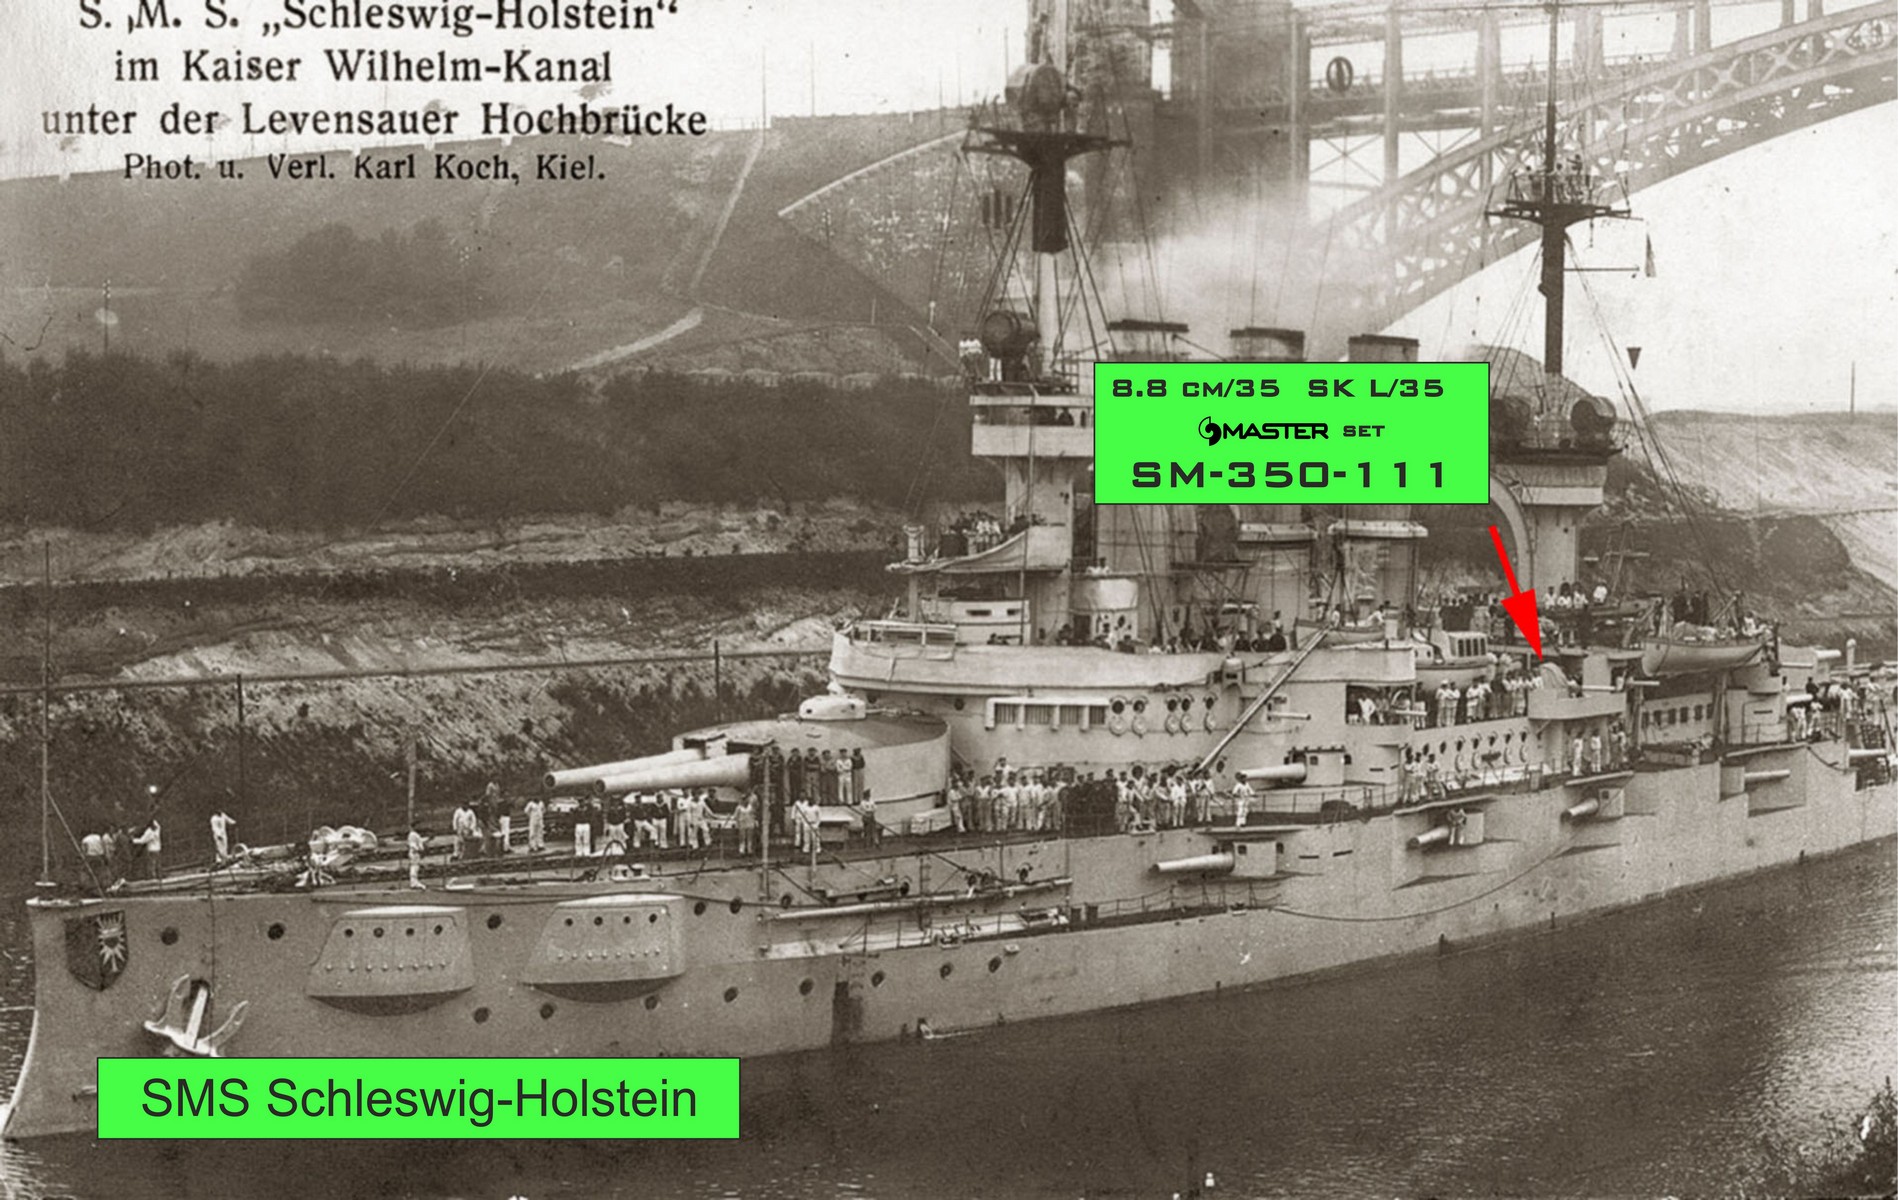 1/350 一战德国 8.8cm SK L/35 舰炮 - 点击图像关闭